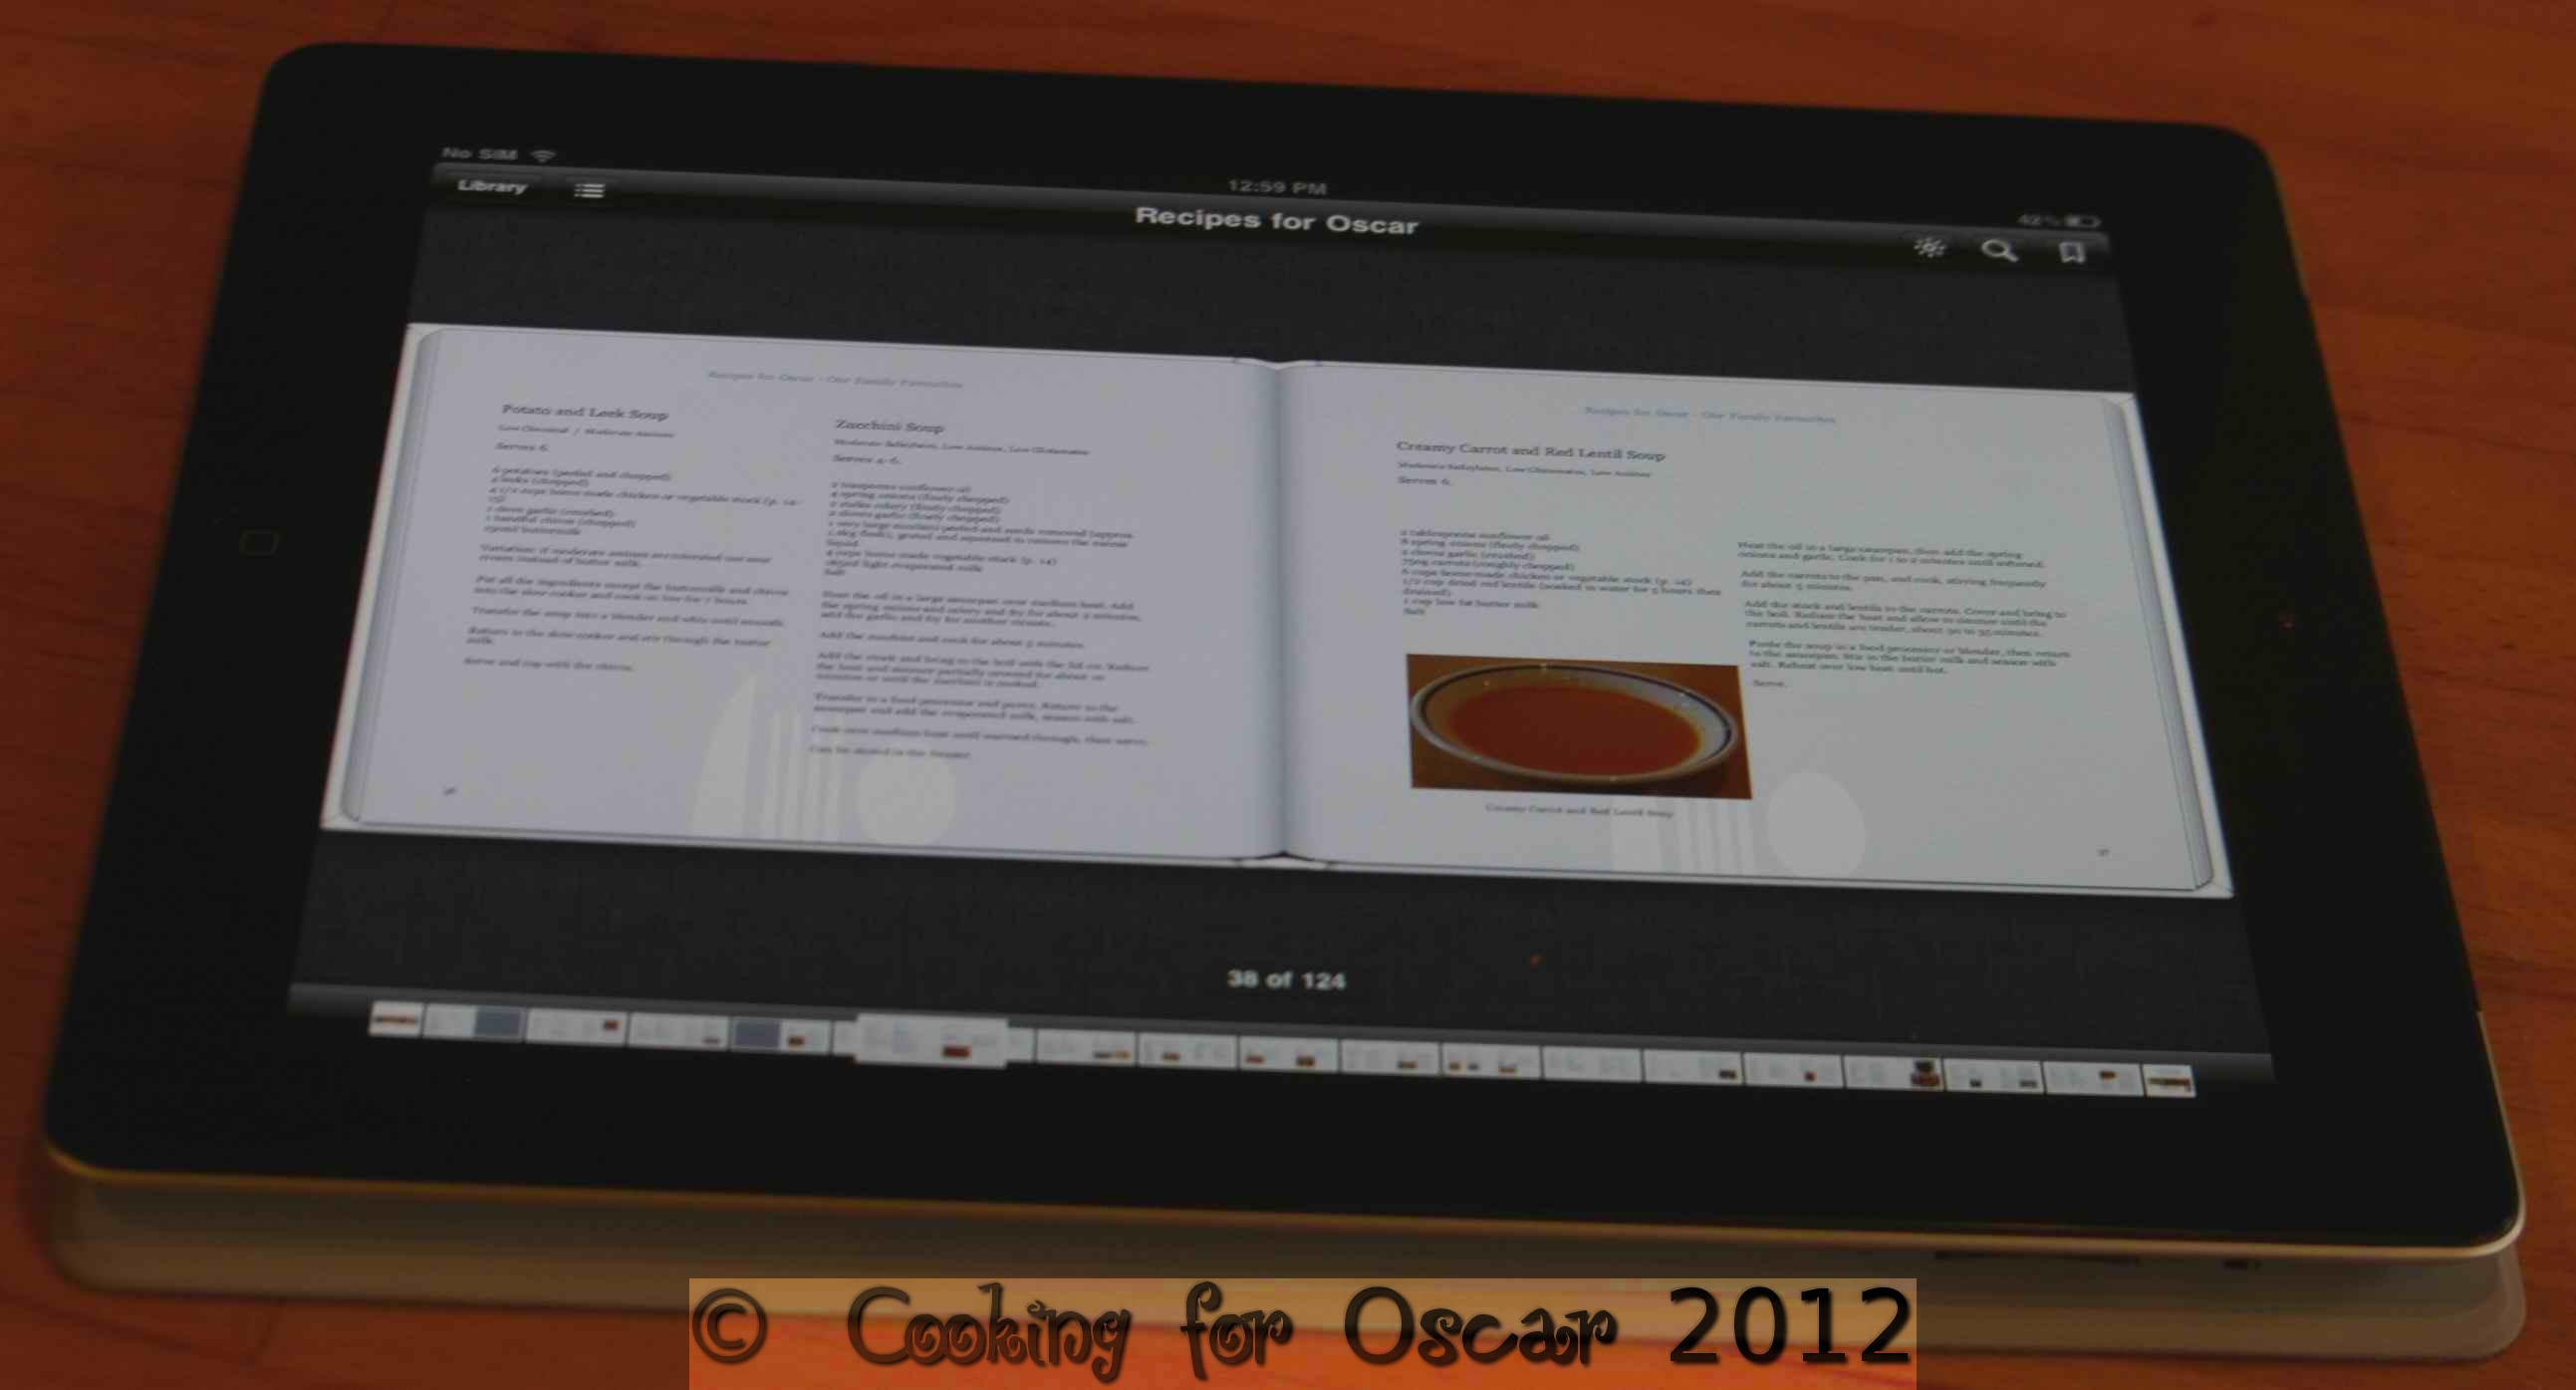 Cooking for Oscar Recipe Book: Recipes for Oscar iBook